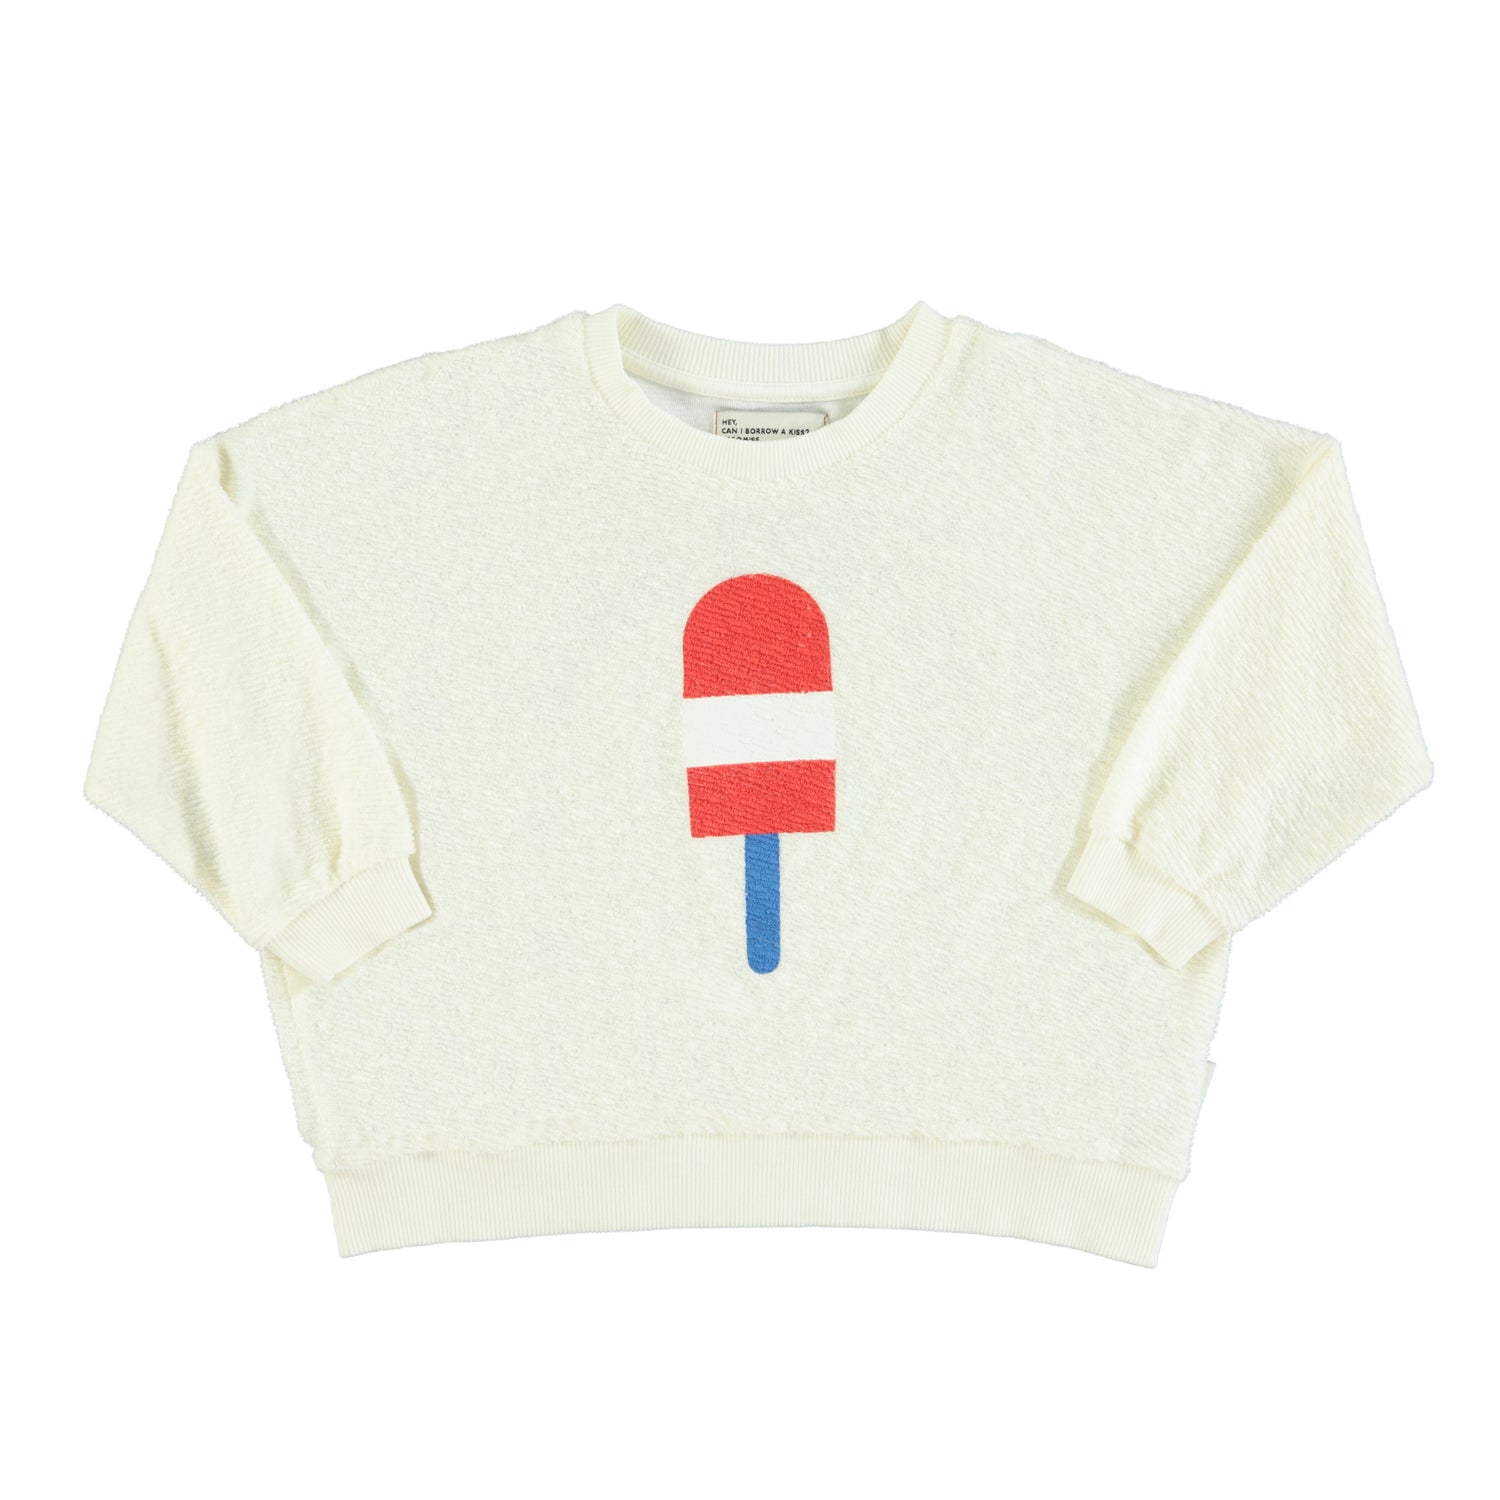 Piupiuchick Ecru with Ice Cream Graphic Sweatshirt